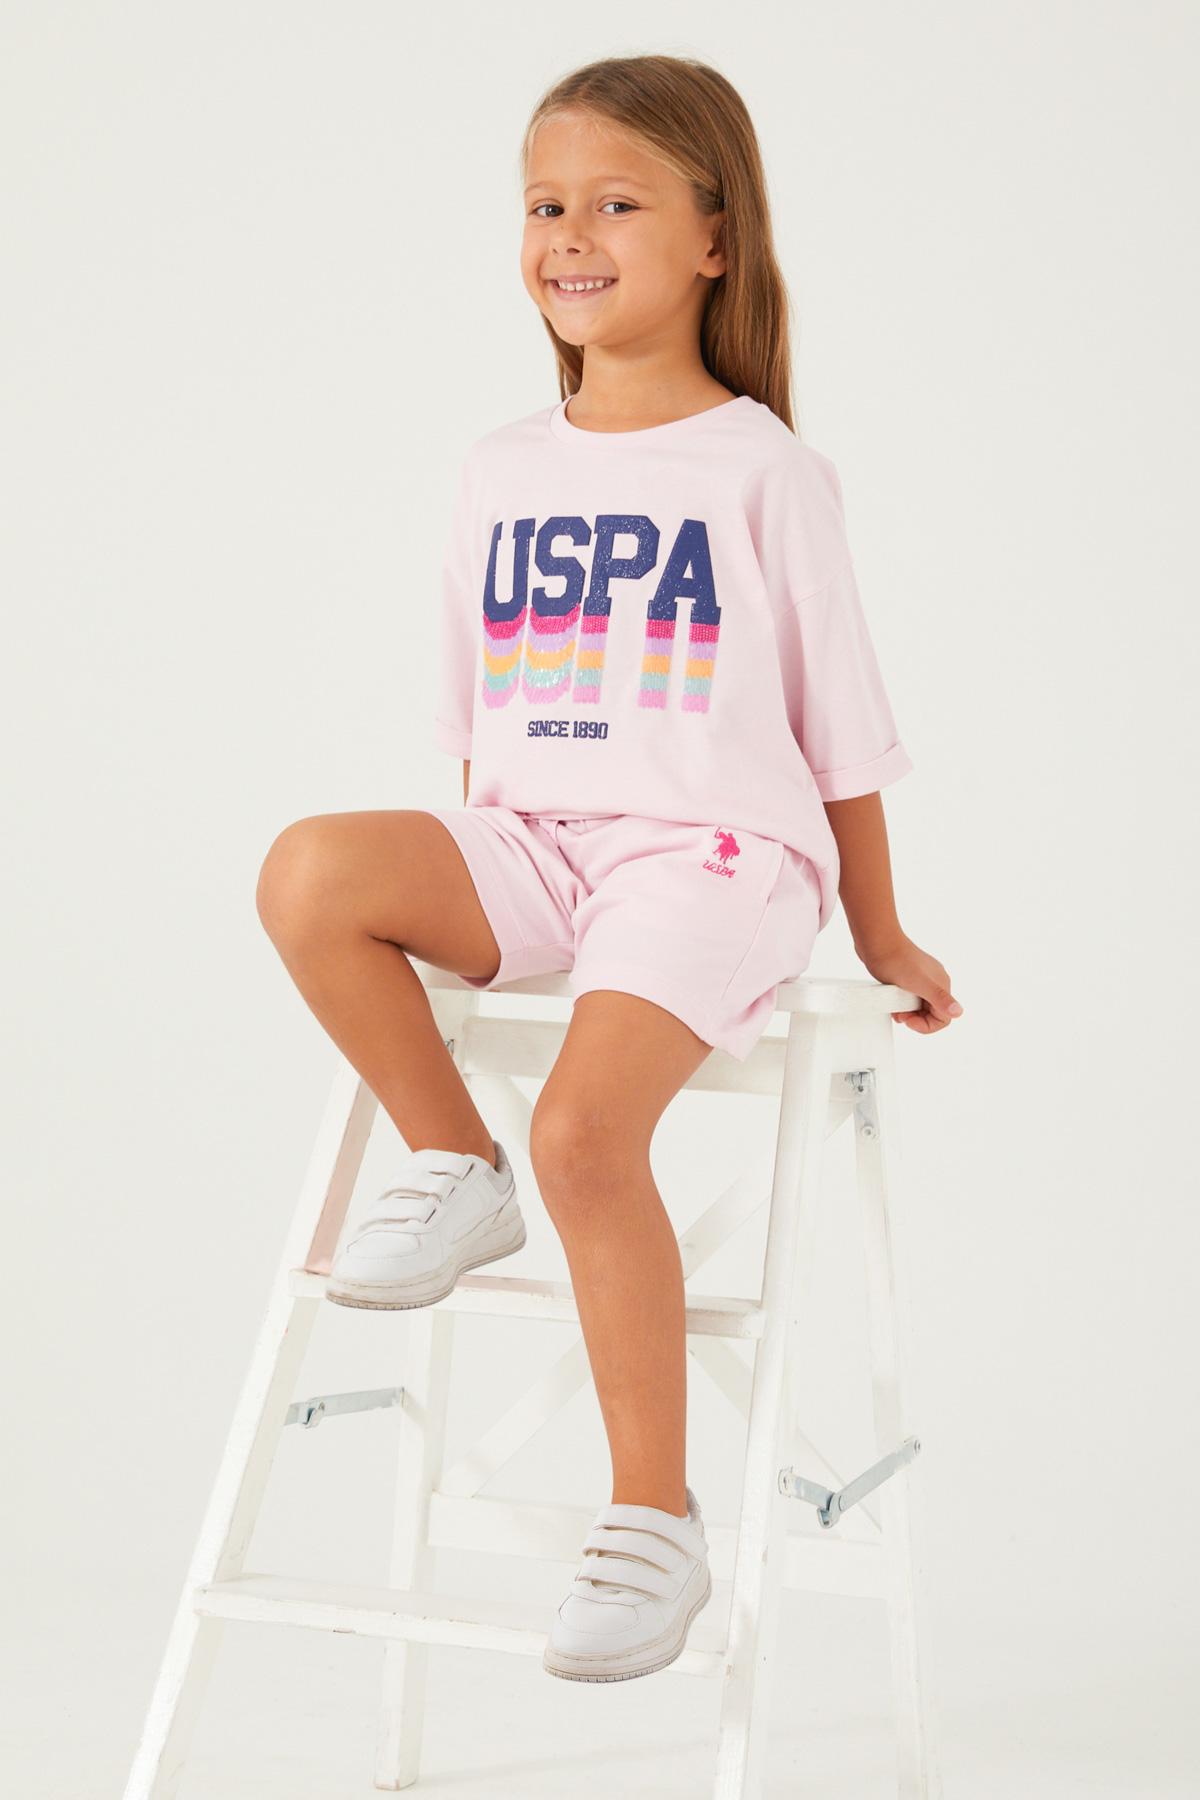 U.S. POLO ASSN. Komplet šorc i majica za devojčice US1405-G roze